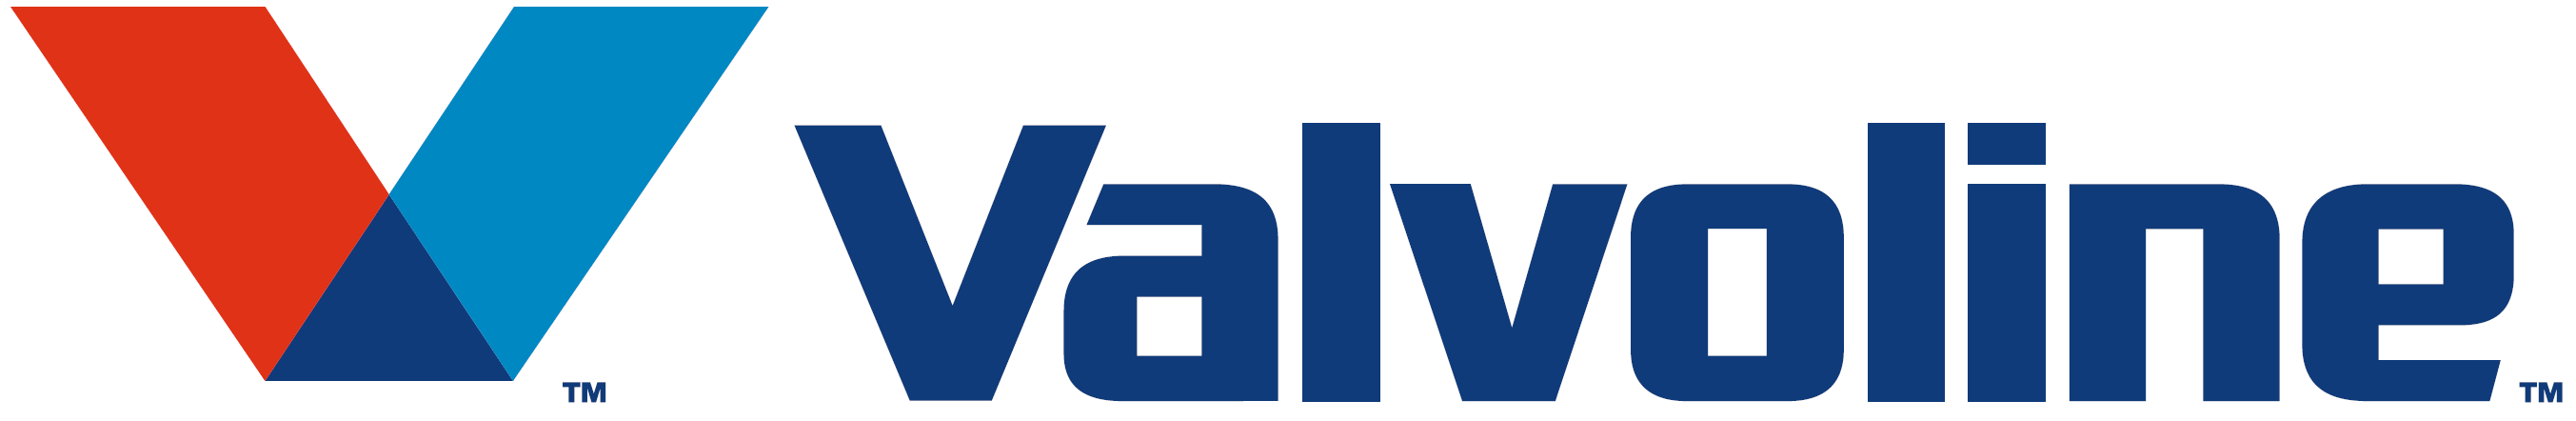 Download HD Valvoline-logo Transparent PNG Image - NicePNG.com